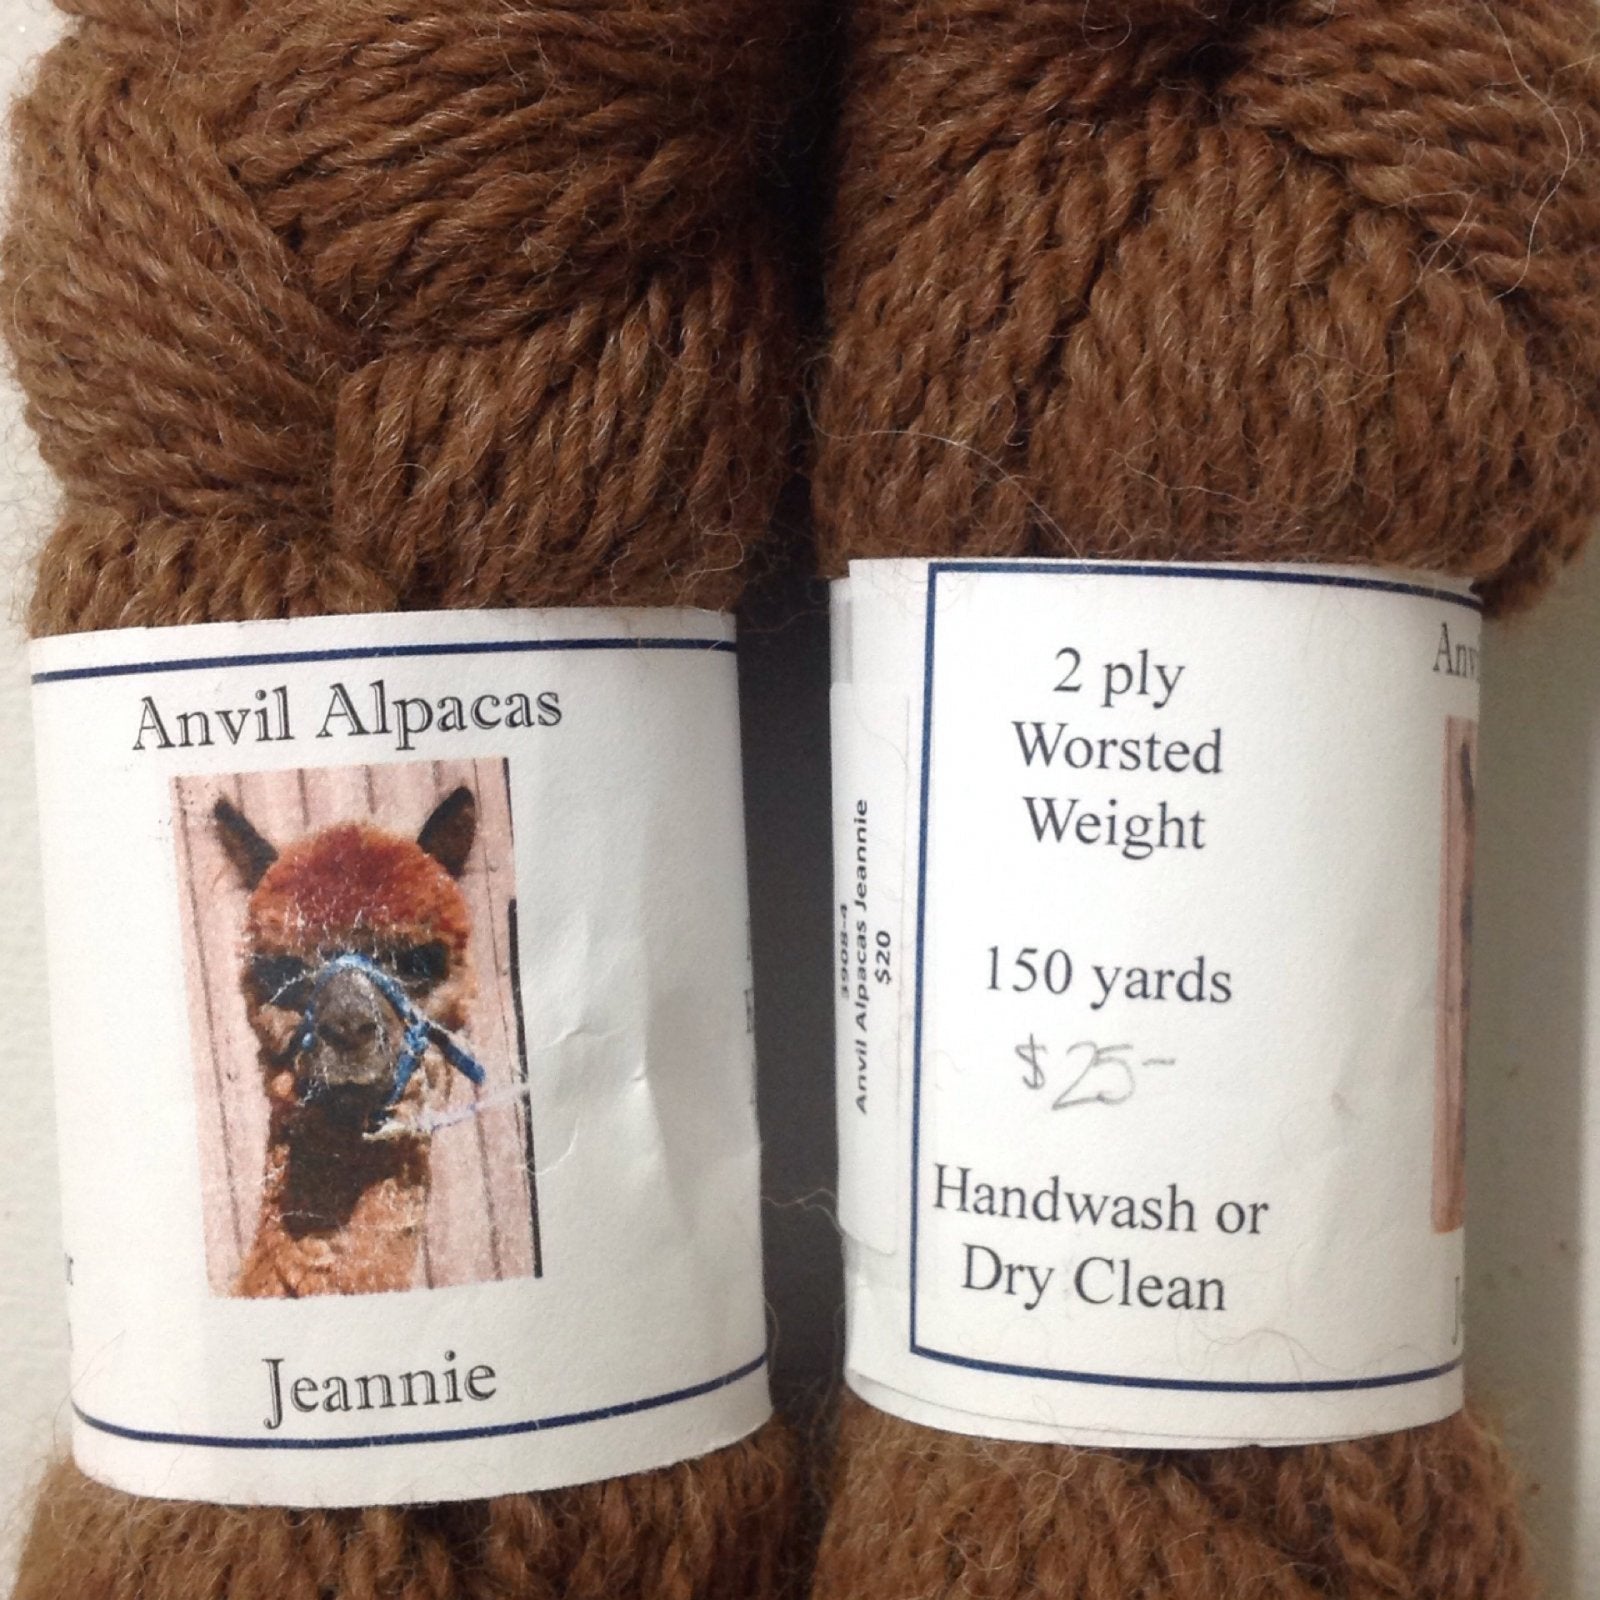 Yarn: Worsted Weight Alpaca yarn